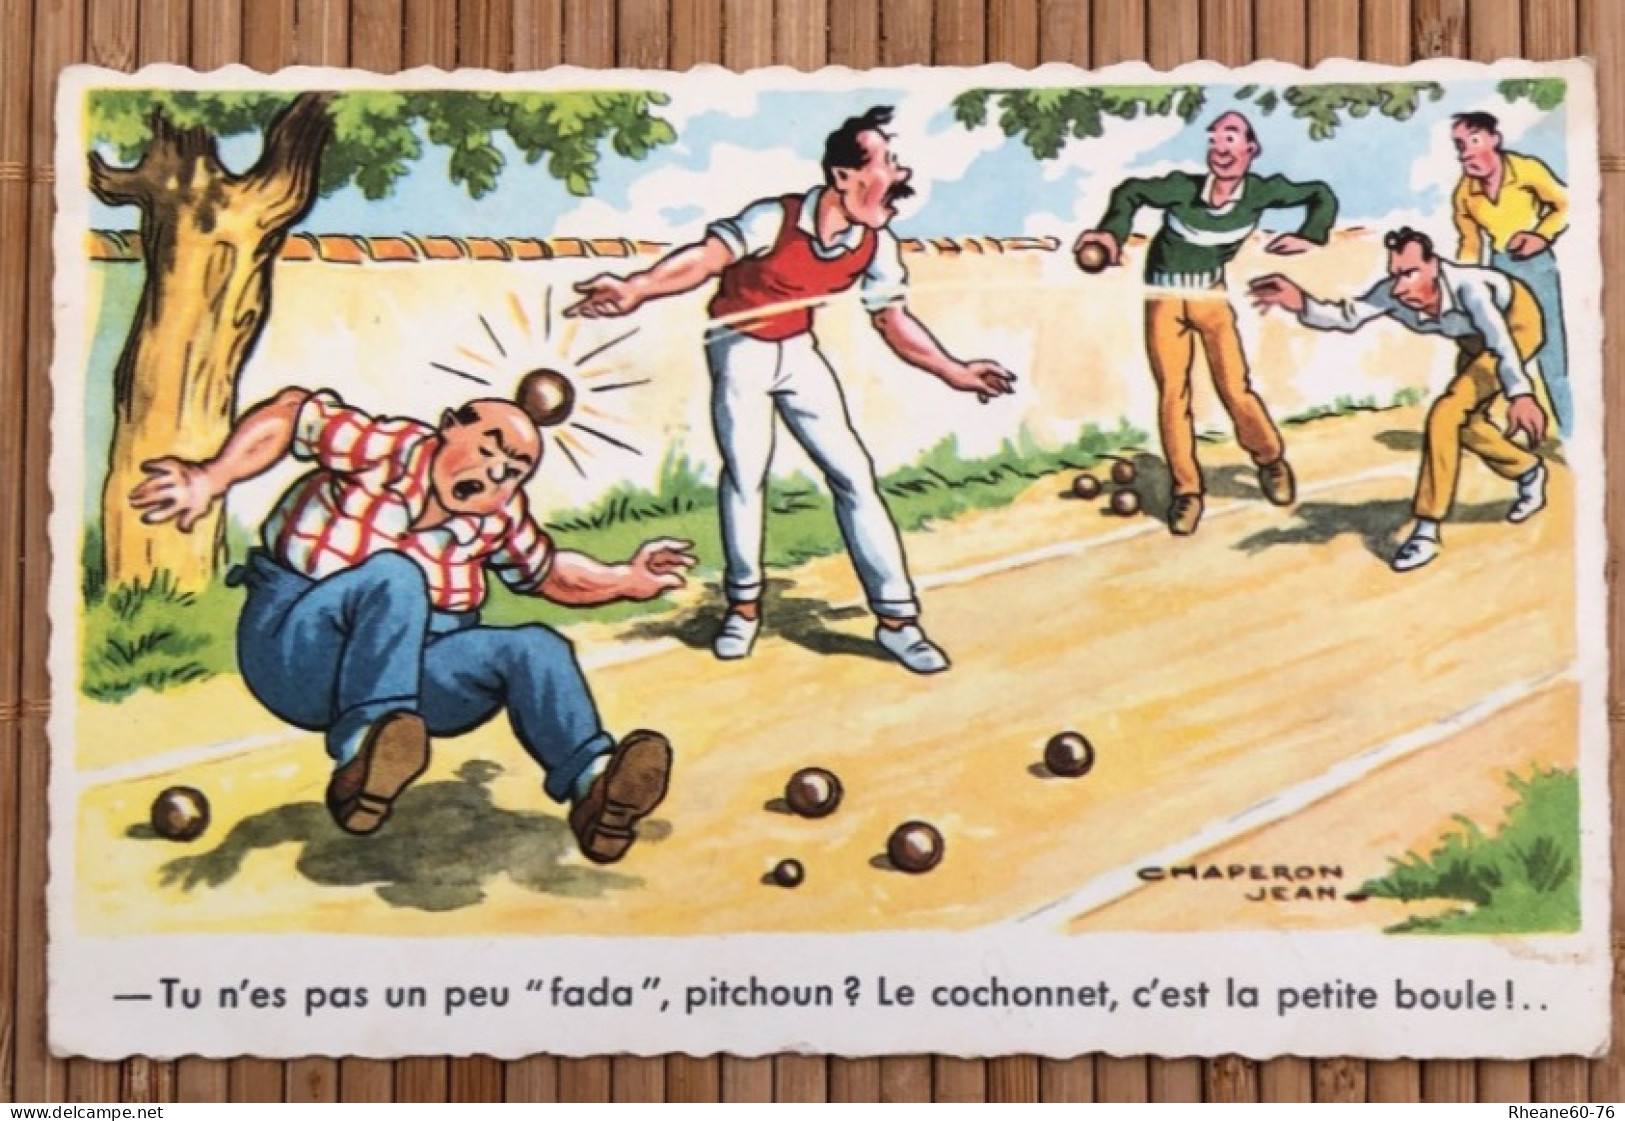 CPSM Illustrateur Jean Chaperon - Pétanque Hommes Pitchoun Humour - Cochonnet Petite Boule - Editions G Picard 1101 - Chaperon, Jean